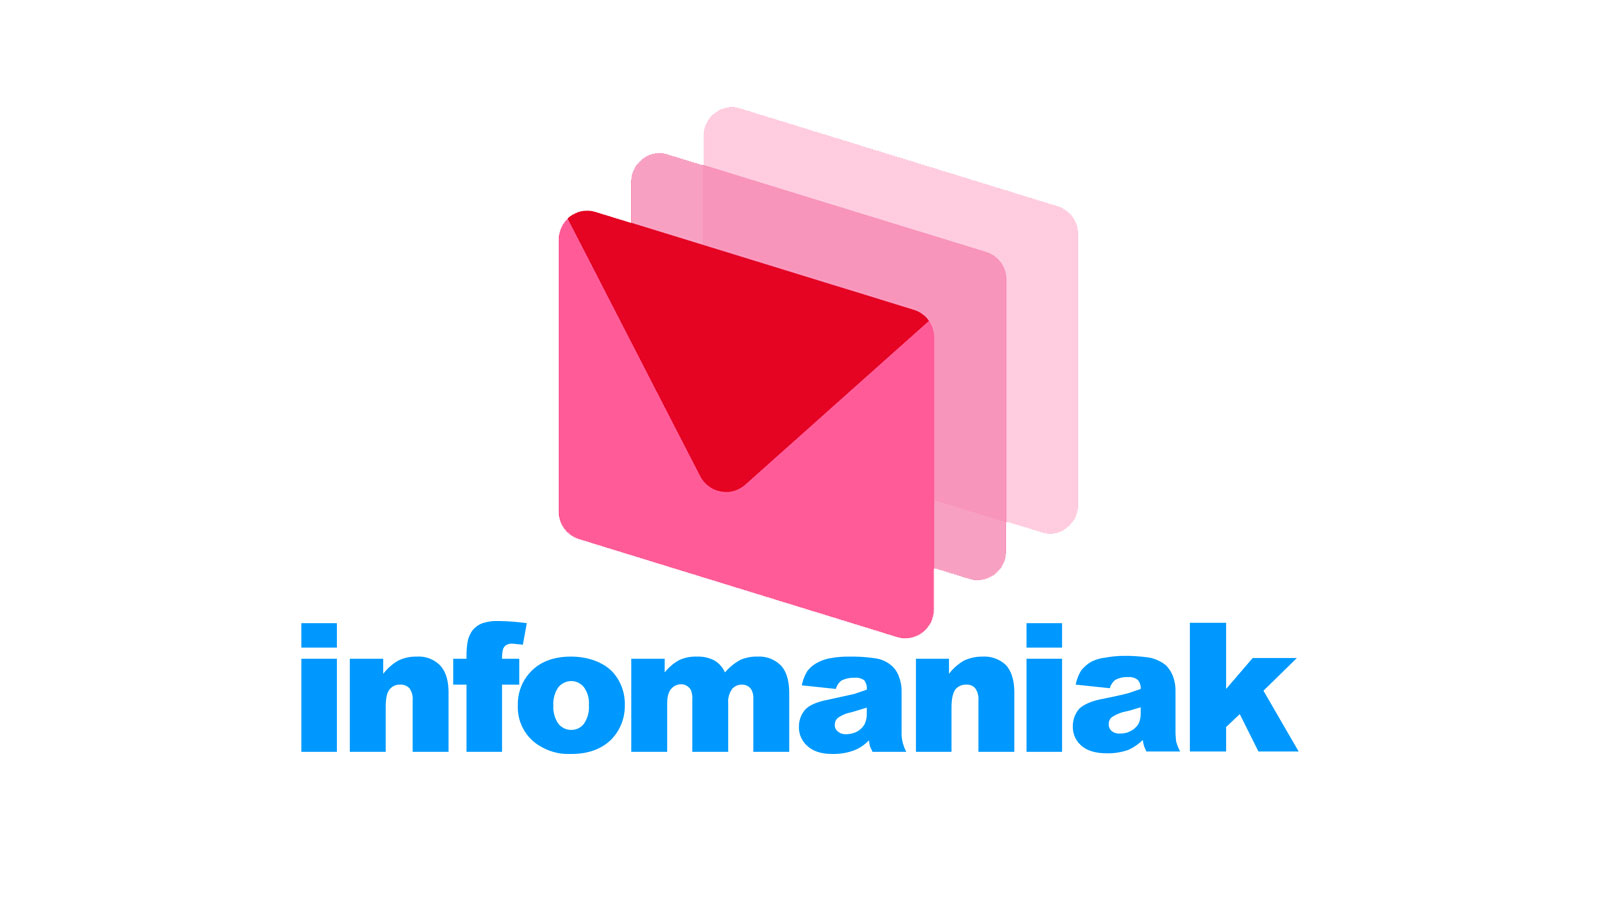 En 2022 Infomaniak redoublera d'efforts pour contrer Google, Microsoft et cie